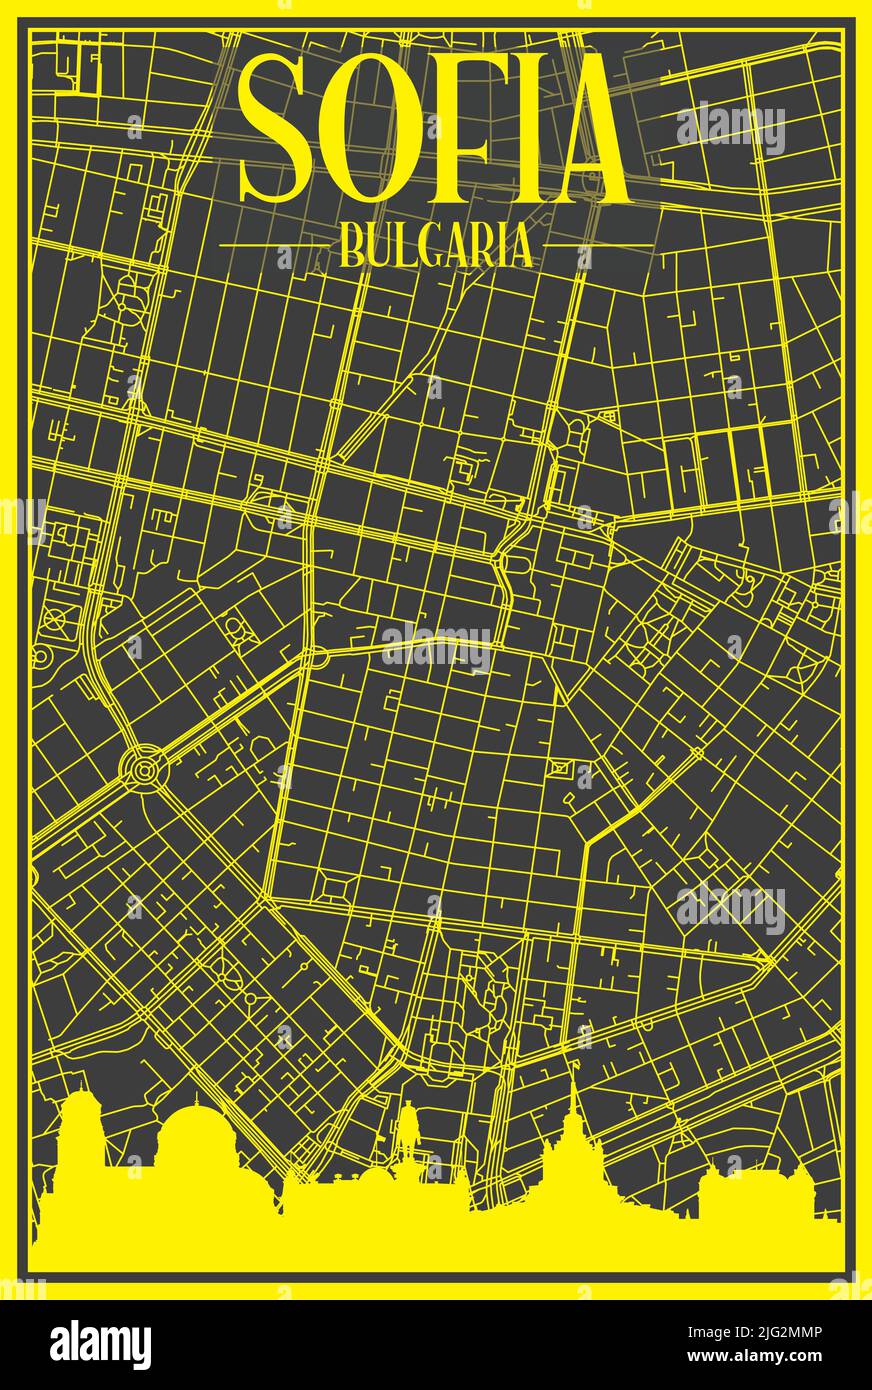 Affiche de ville imprimée en jaune avec vue panoramique et rues dessinées à la main sur fond gris foncé du centre DE SOFIA, BULGARIE Illustration de Vecteur